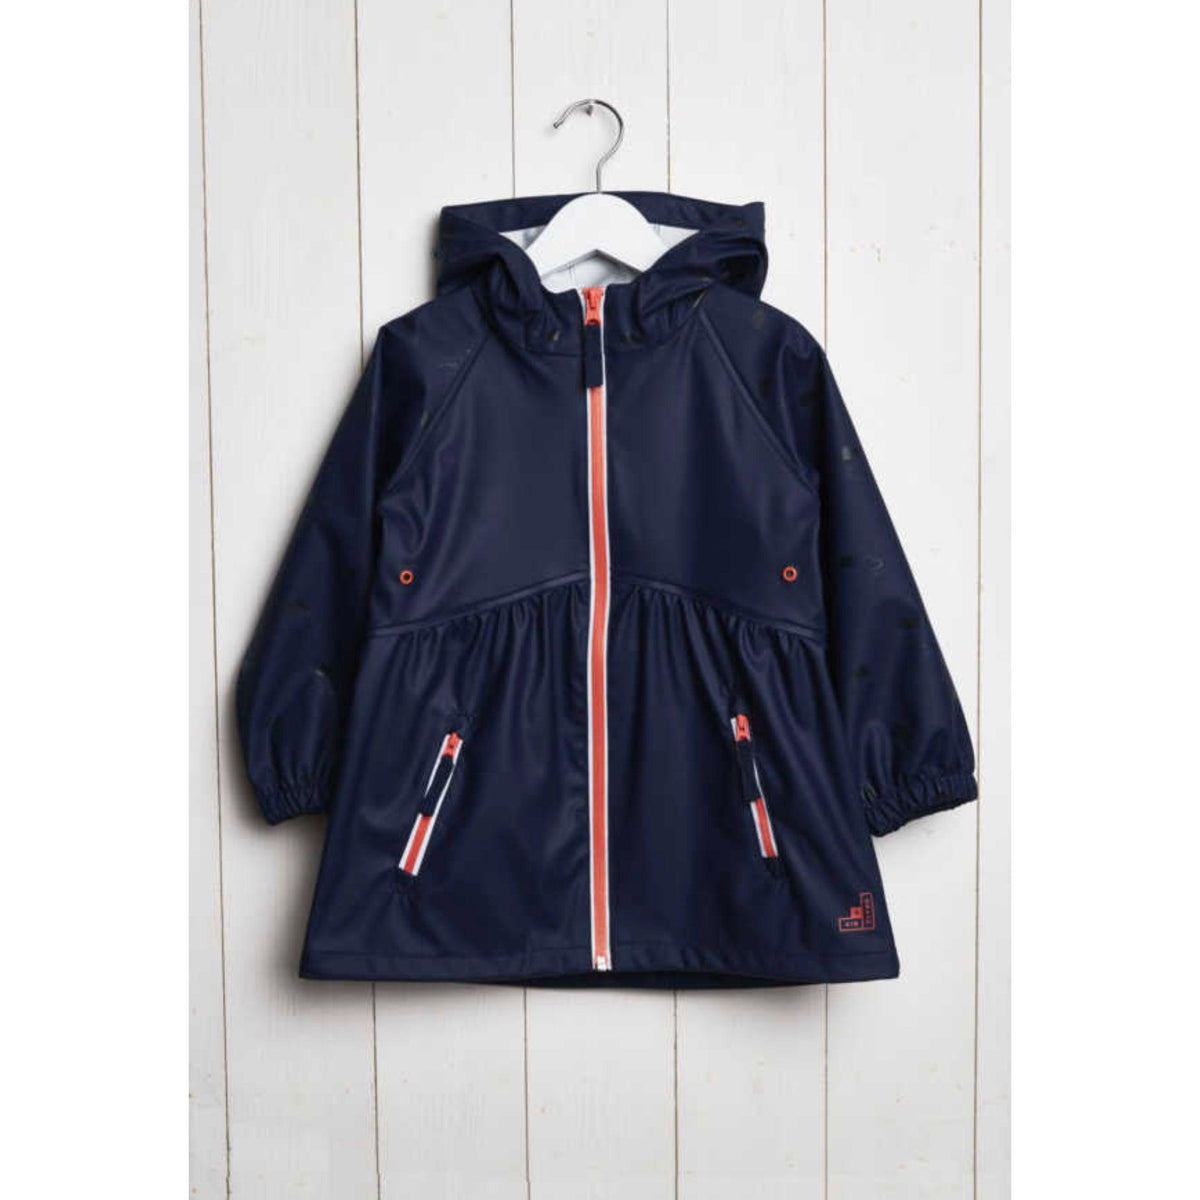 Grass & Air | Kids Navy Raincloud Light Catcher Jacket | Girls Rain Jacket - becauseofadi